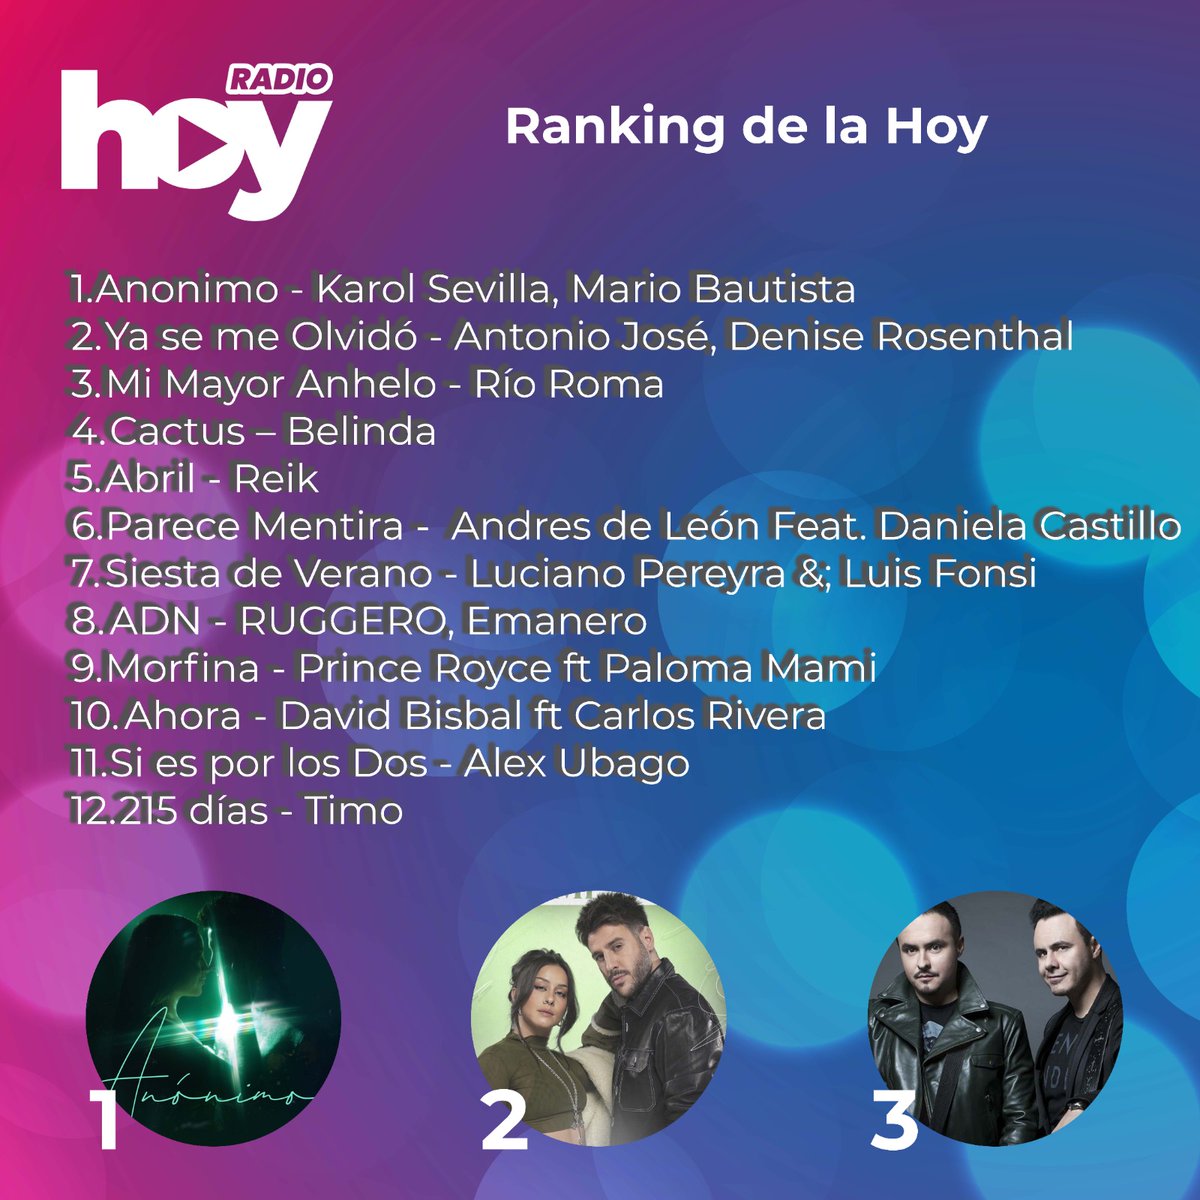 Los Temazos de la Semana de Radio Hoy

1. Ranking Nuevos talentos Internacional
2. Ranking Música Española
3. Ranking Música Chilena
4. Ranking de la Hoy

#promocion #radio #chile #fanaticadamundial #musicachilena #musicainternacional #musicaespañola